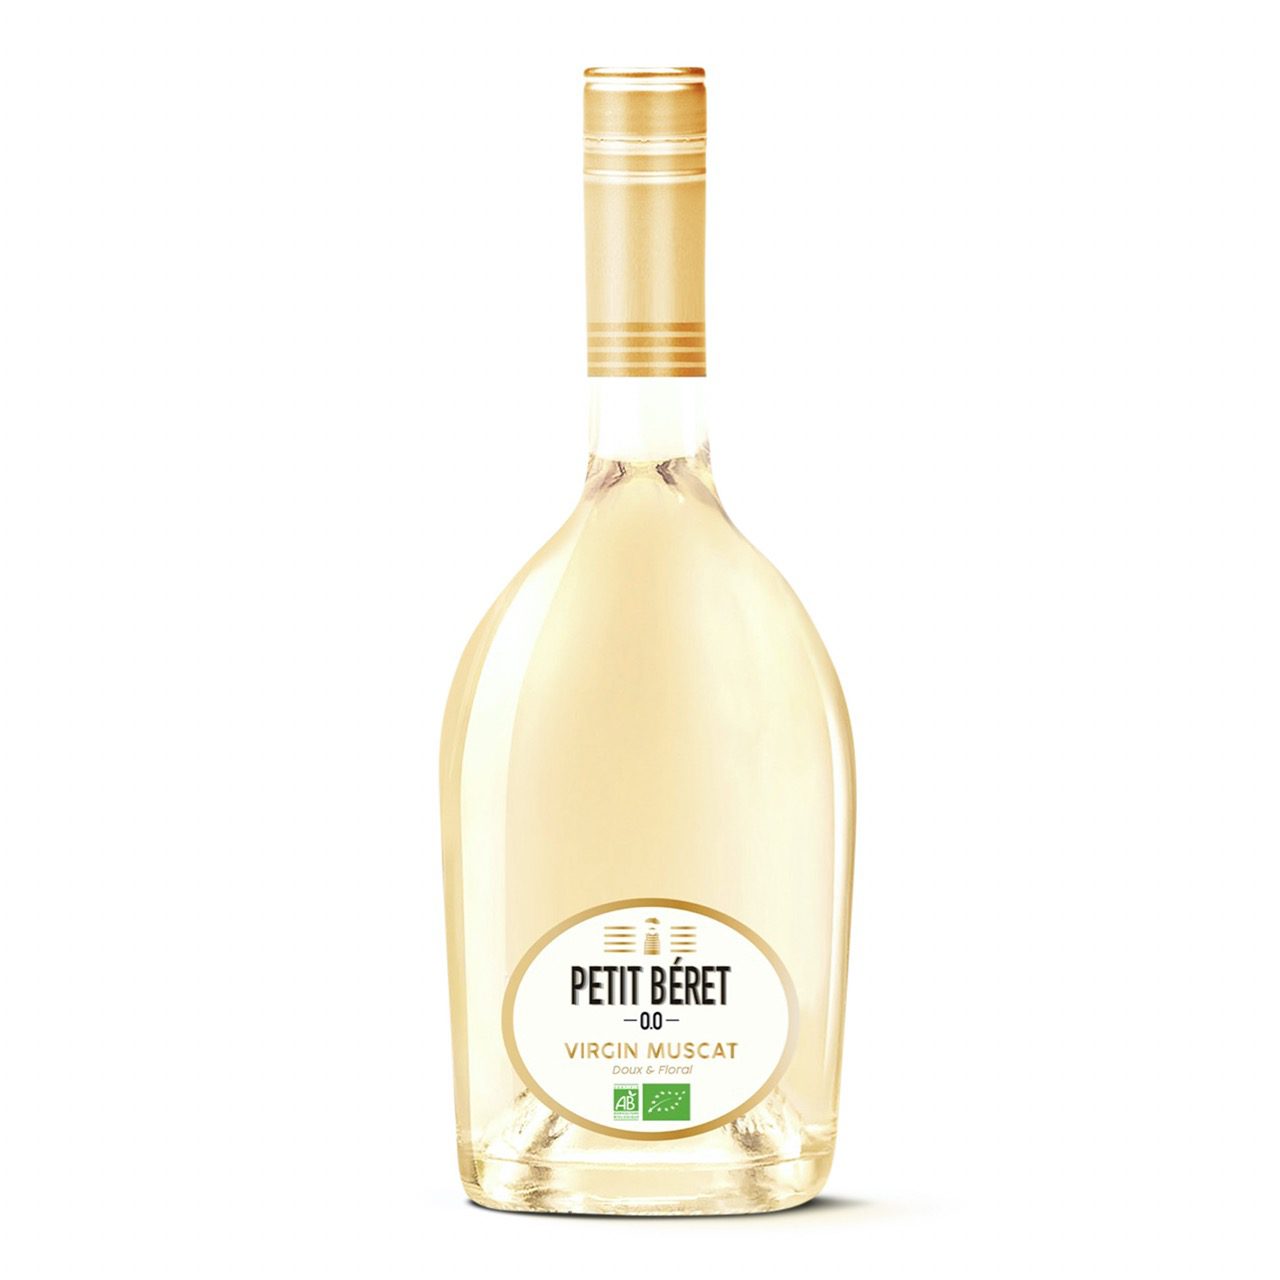 Le Petit 740ml - Bio- alkoholfreier Muscat Virgin Béret